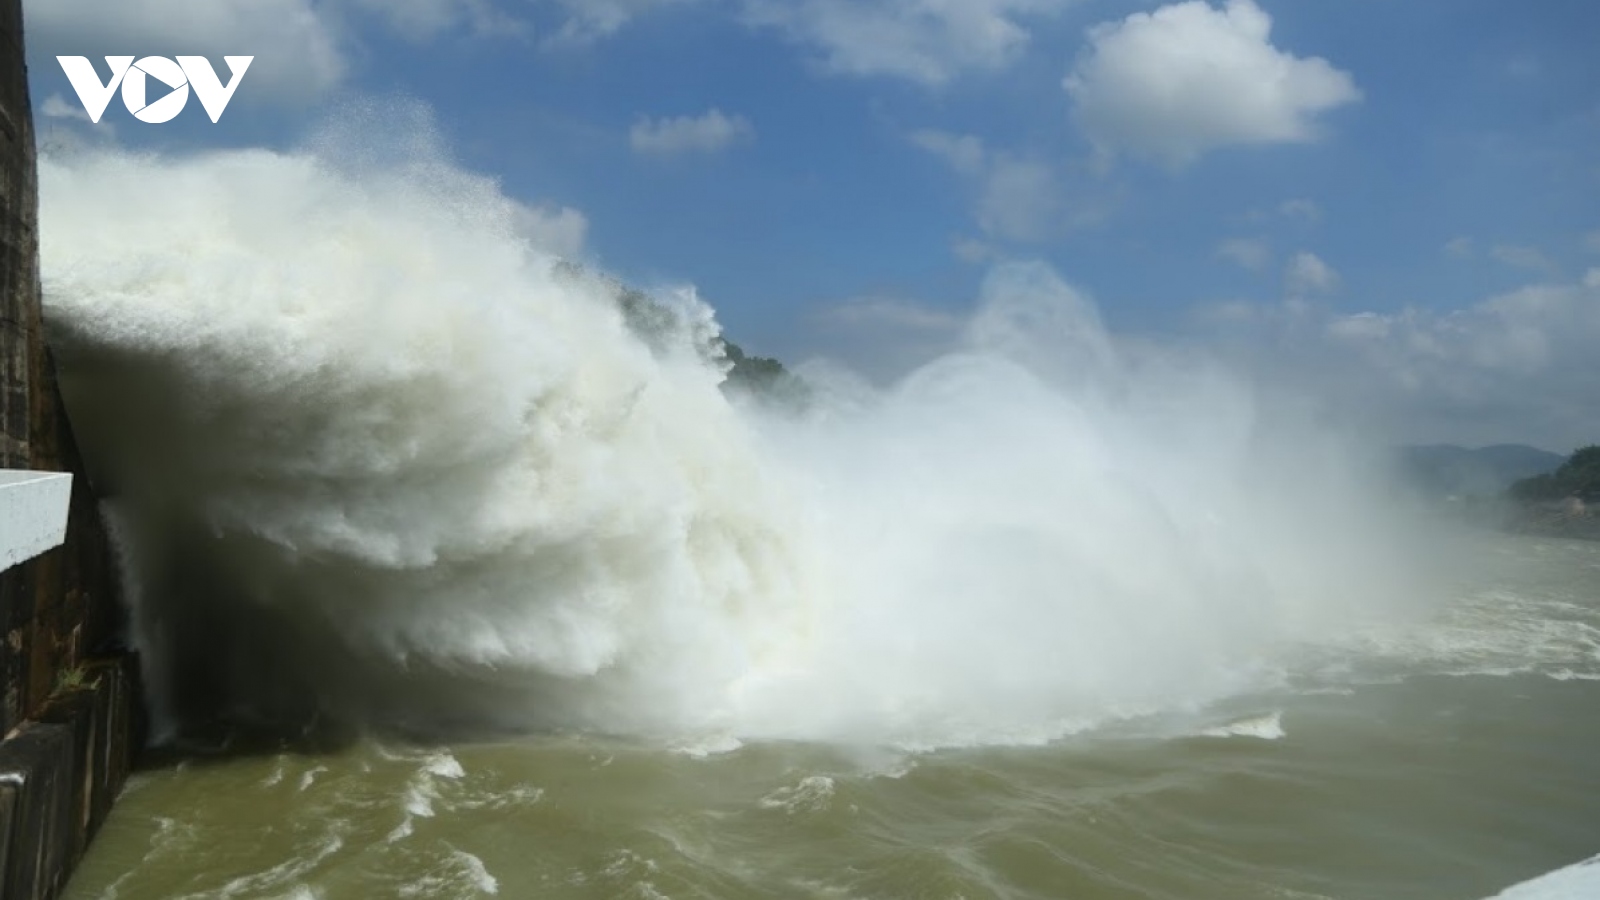 Yêu cầu hồ thủy điện Sơn La, Hòa Bình xả lũ khi mưa lớn làm mực nước tăng cao